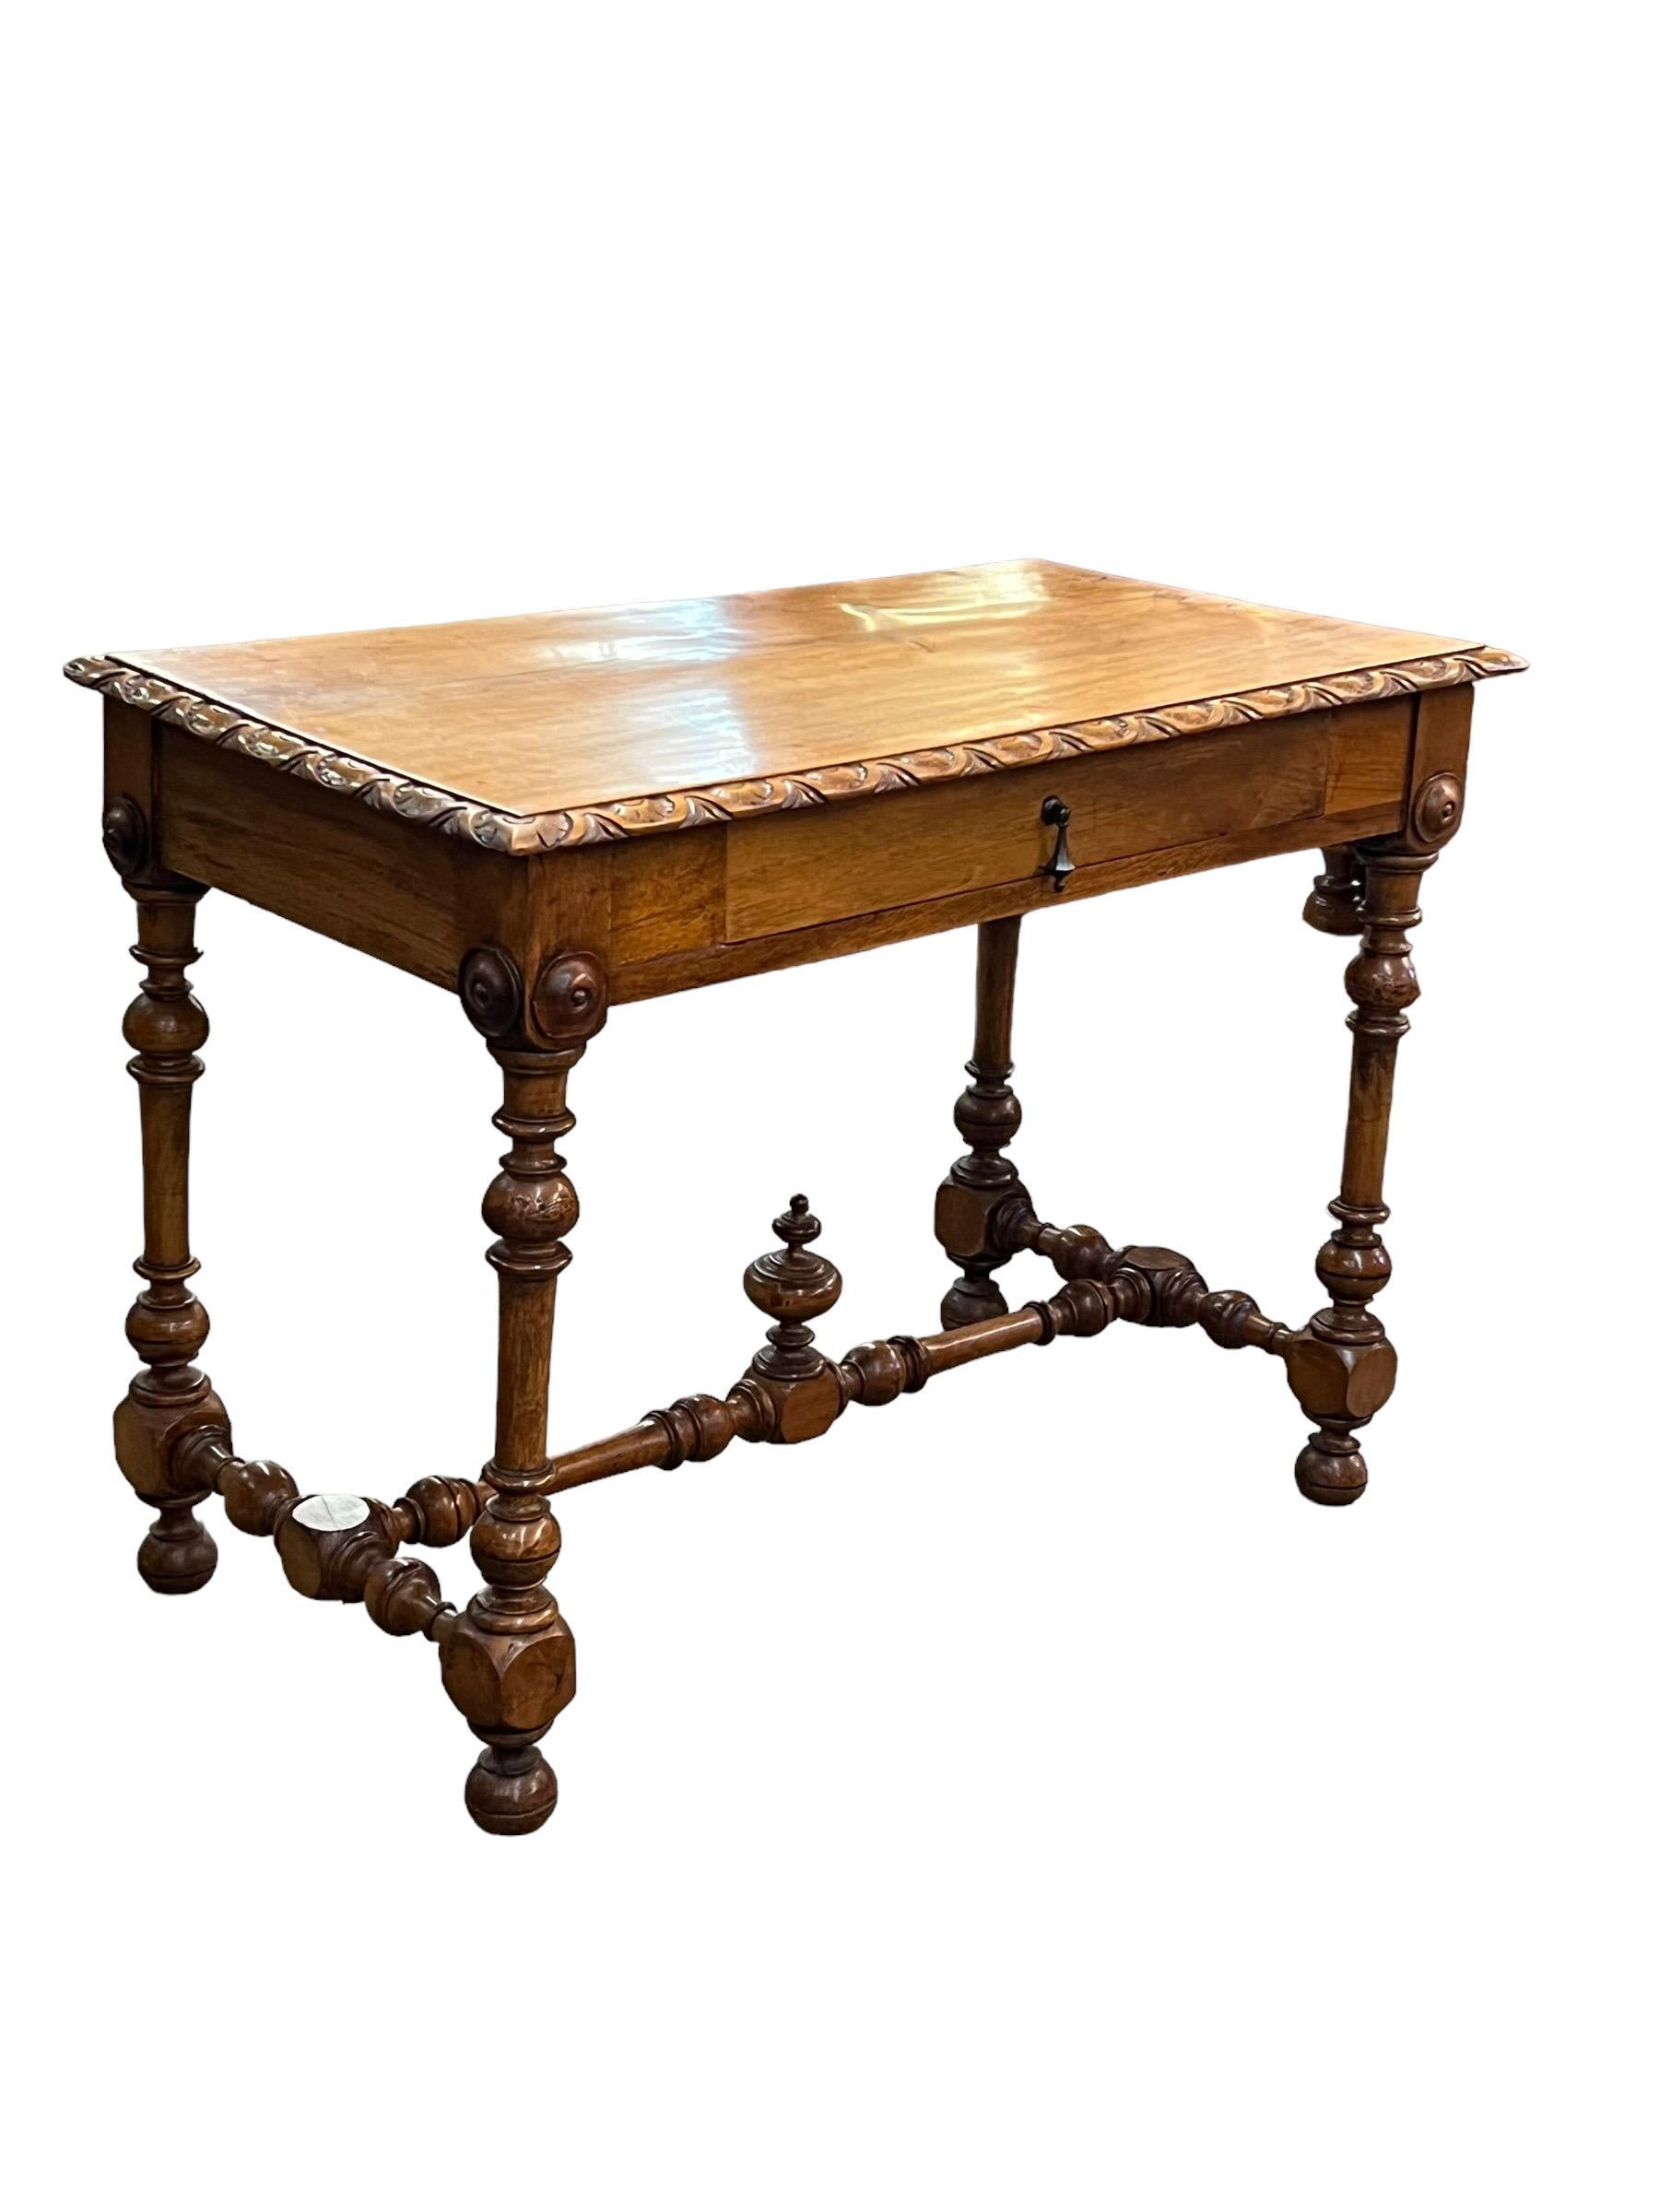 Elegante 19. Jahrhundert Französisch Barock-Stil Obstholz Schreibtisch mit verjüngten gedrechselten Beinen, x-Vintage Gold Spiegel mit detaillierten Basis Bahre mit Urne Finial; einzelne Schublade. Die Deckplatte ist aus einer massiven Platte mit